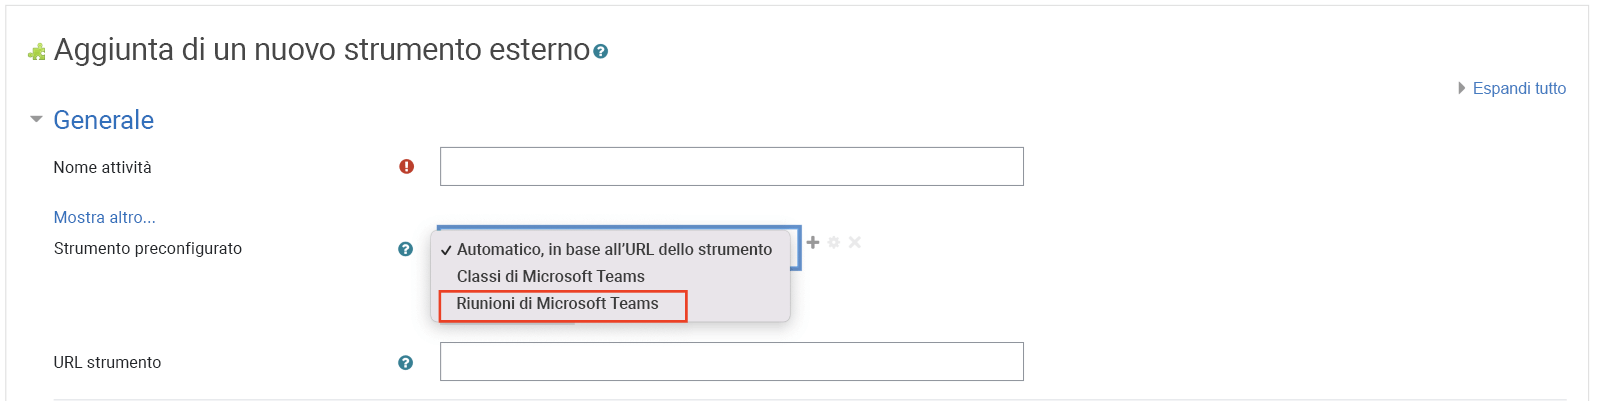 Screenshot di Moodle, che seleziona "Teams riunioni" nell'elenco a discesa dello strumento preconfigurato.